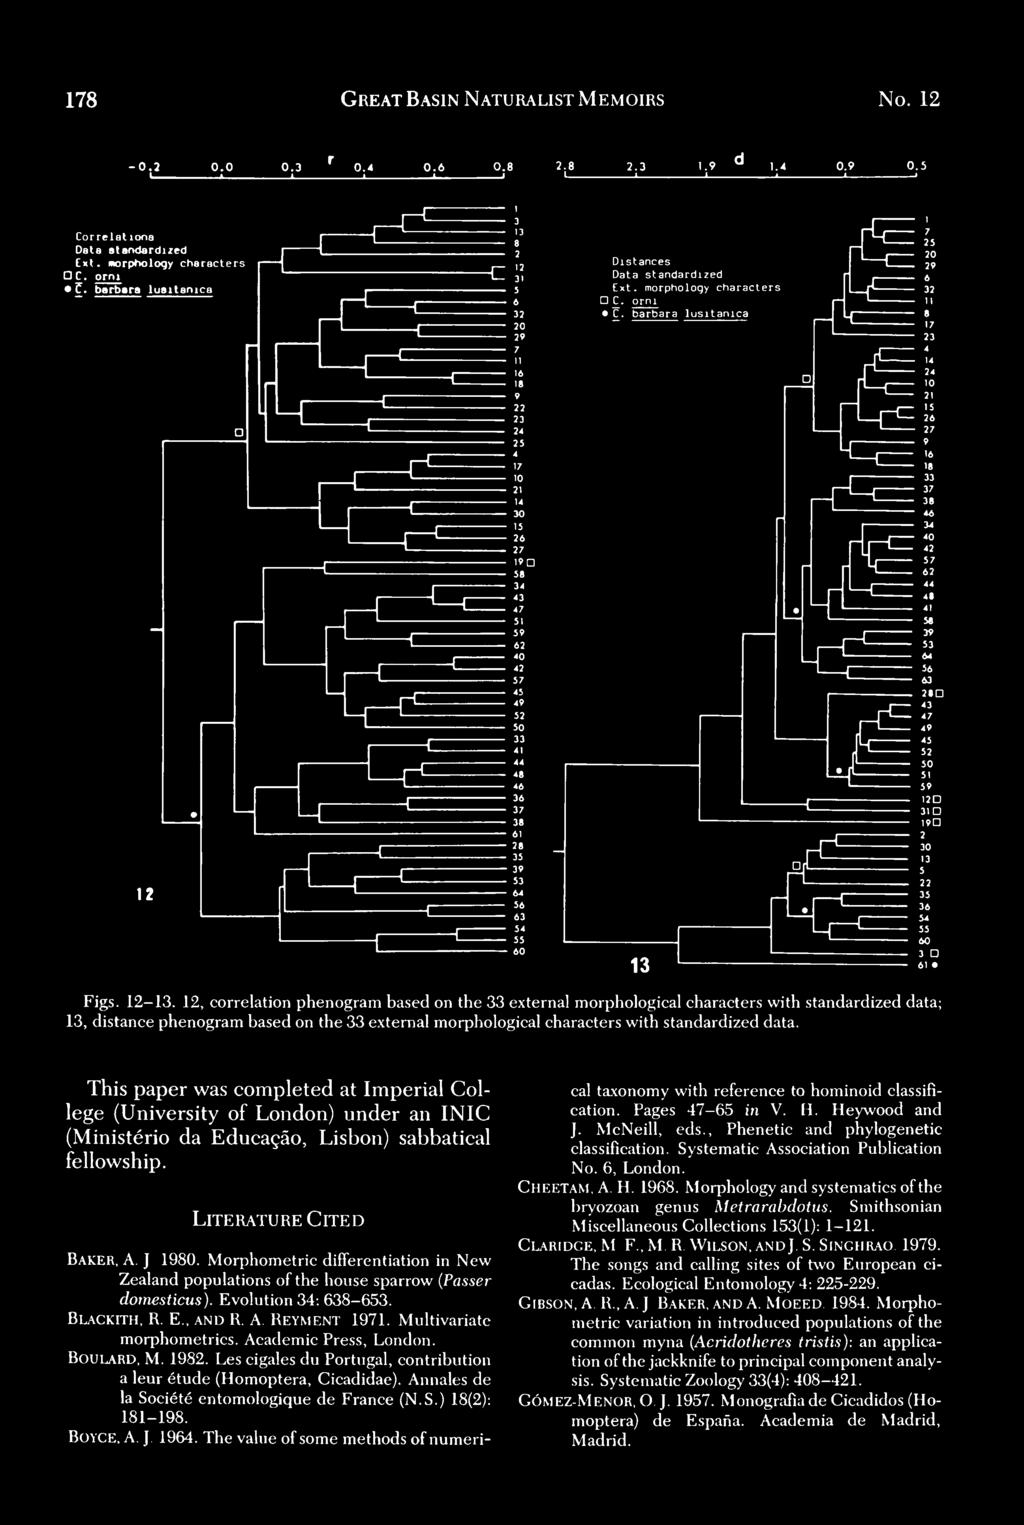 Academic Press, London. BOULARD, M. 1982. Les cigales du Portugal, contribution a leur etude (Homoptera, Cicadidae). Annales de la Societe entomologique de France (N.S.) 18(2): 181-198. BoYCE, A J.